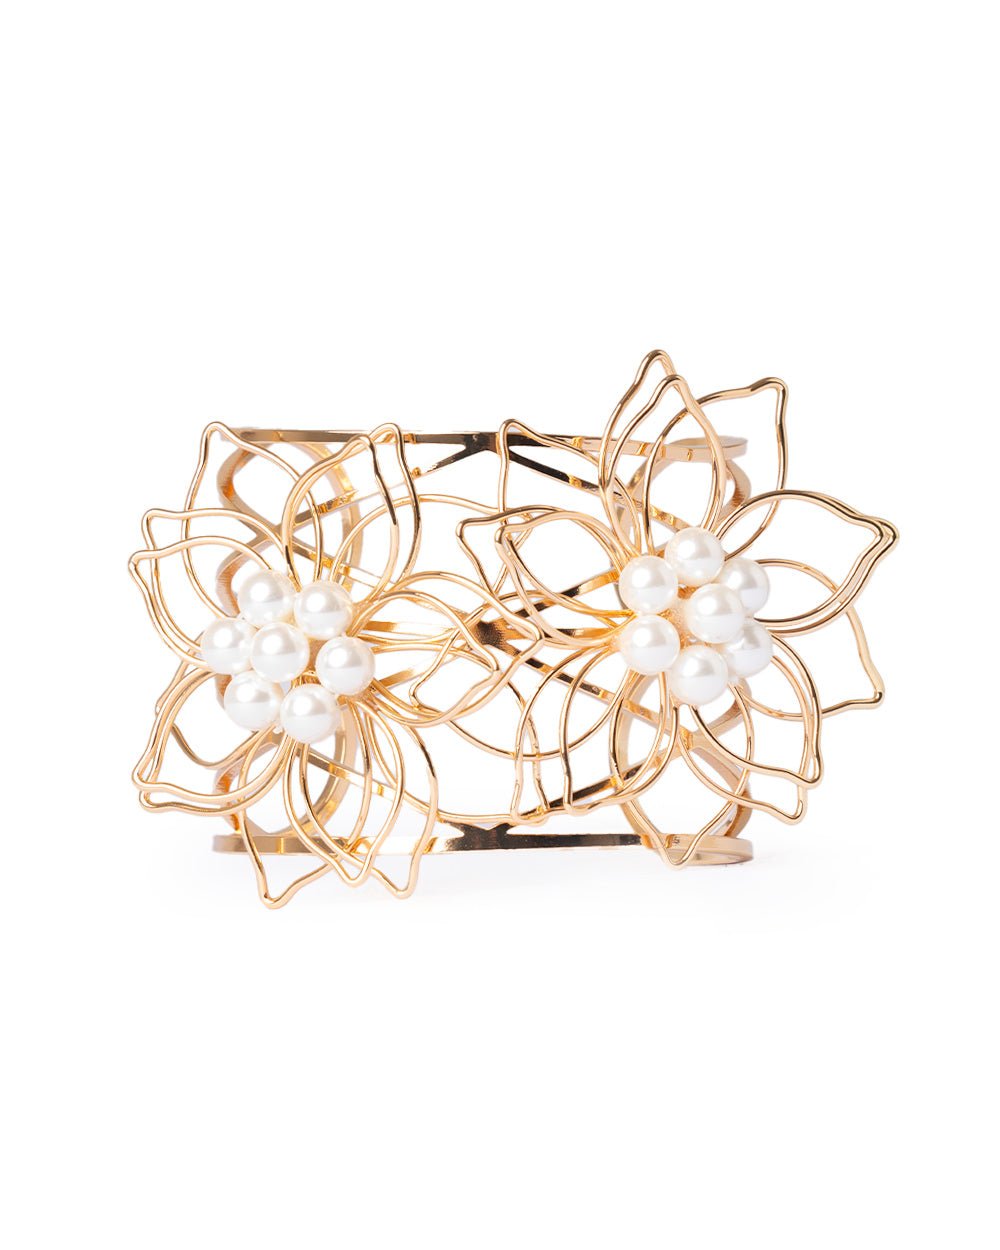 Bracciale rigido da polso in metallo con fiore stilizzato con perle in vetro - Mya Accessories